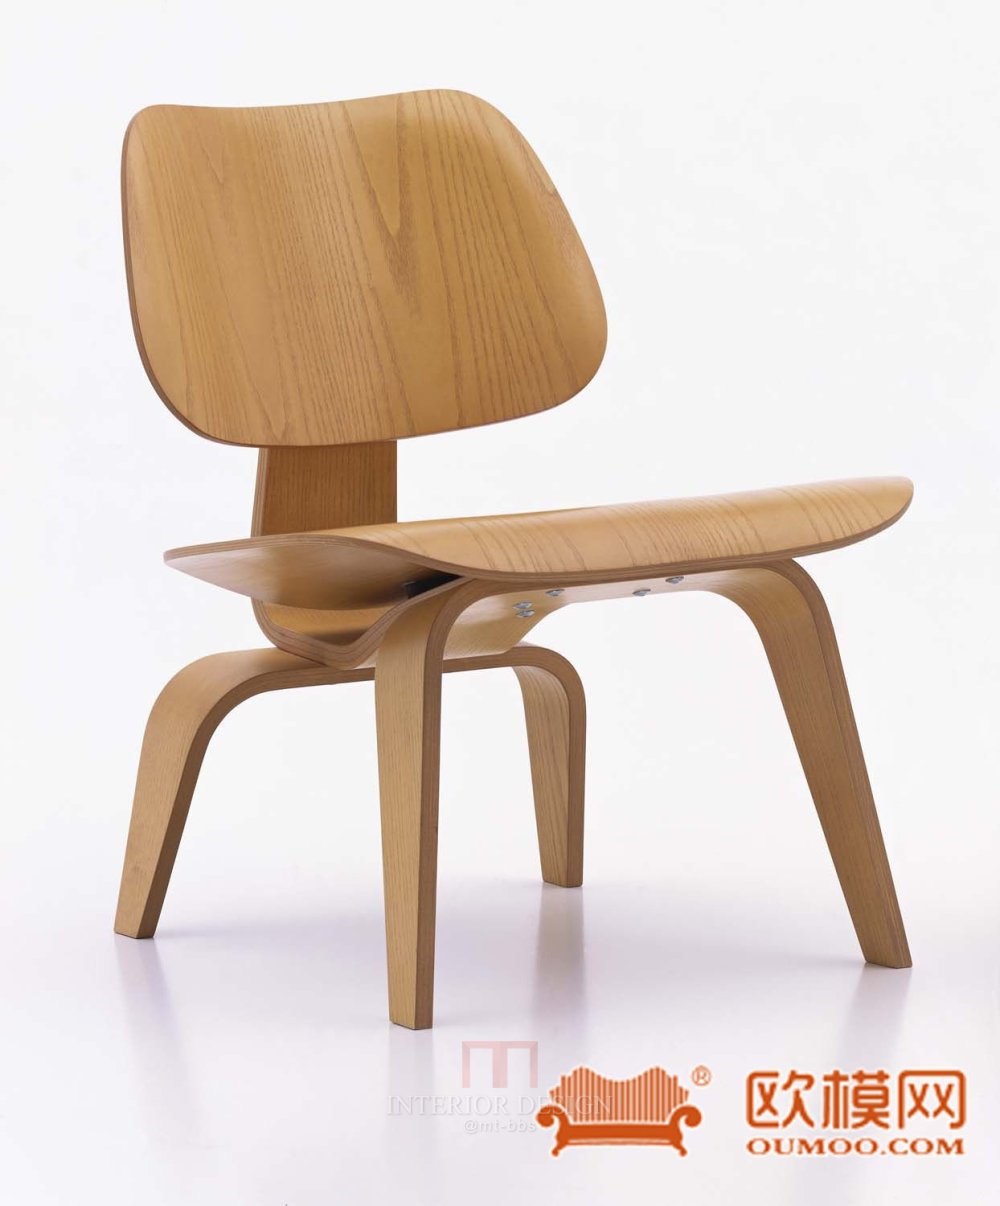 2014年欧模网精品单体模型库_3DS 单人矮木头椅子.jpg